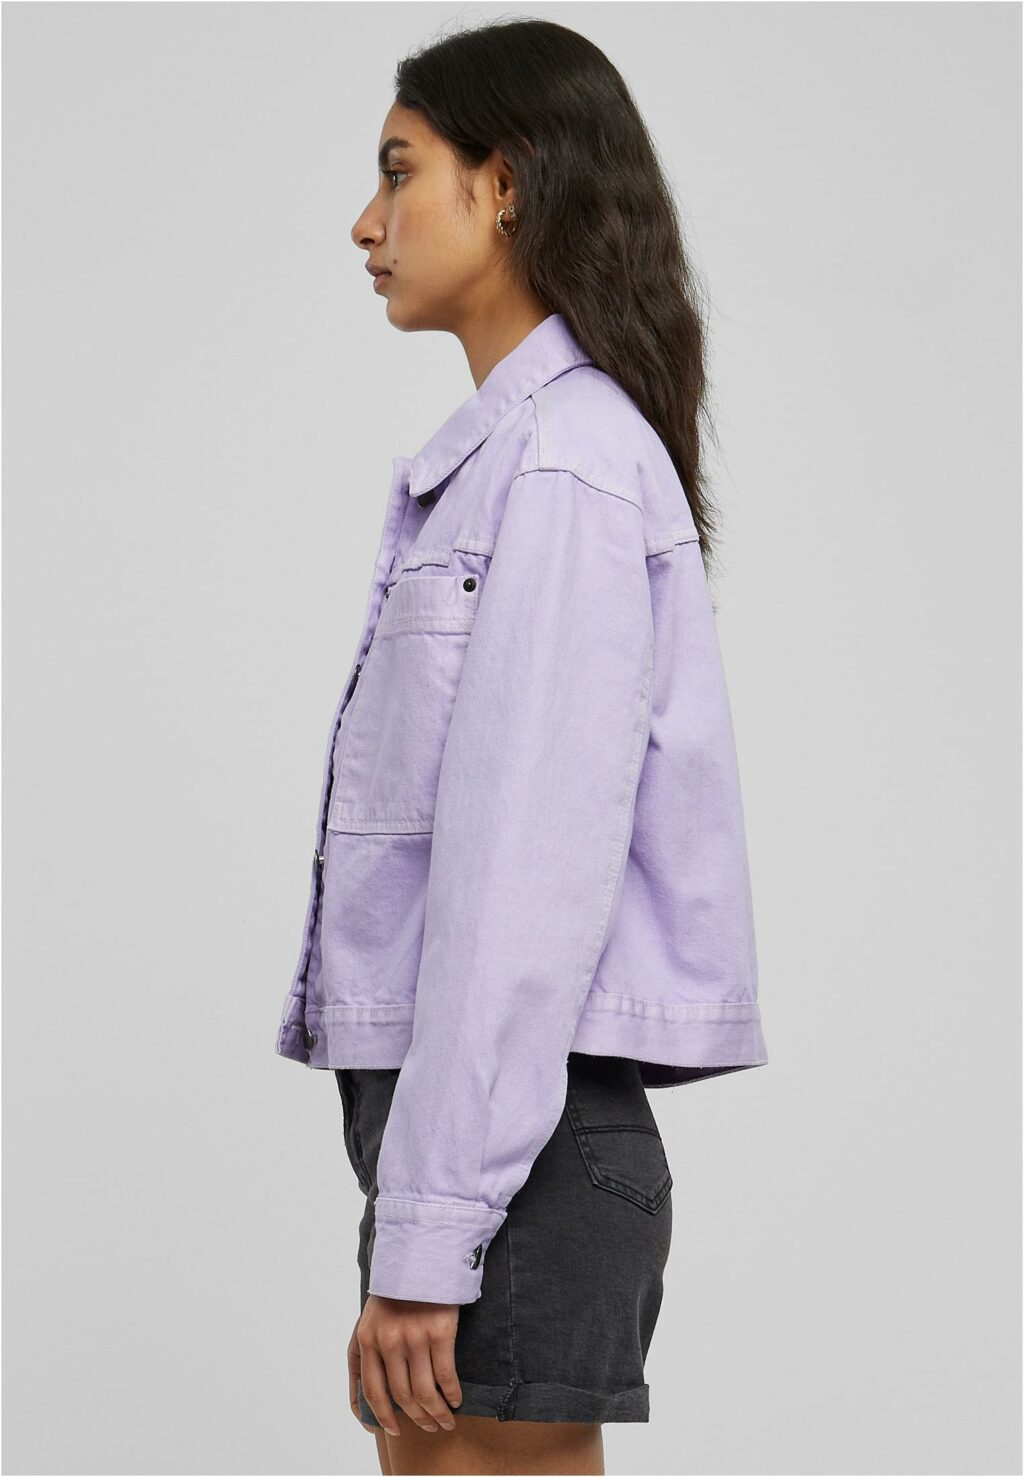 Urban Classics Ladies Short Boxy Worker Jacket lilac TB4781